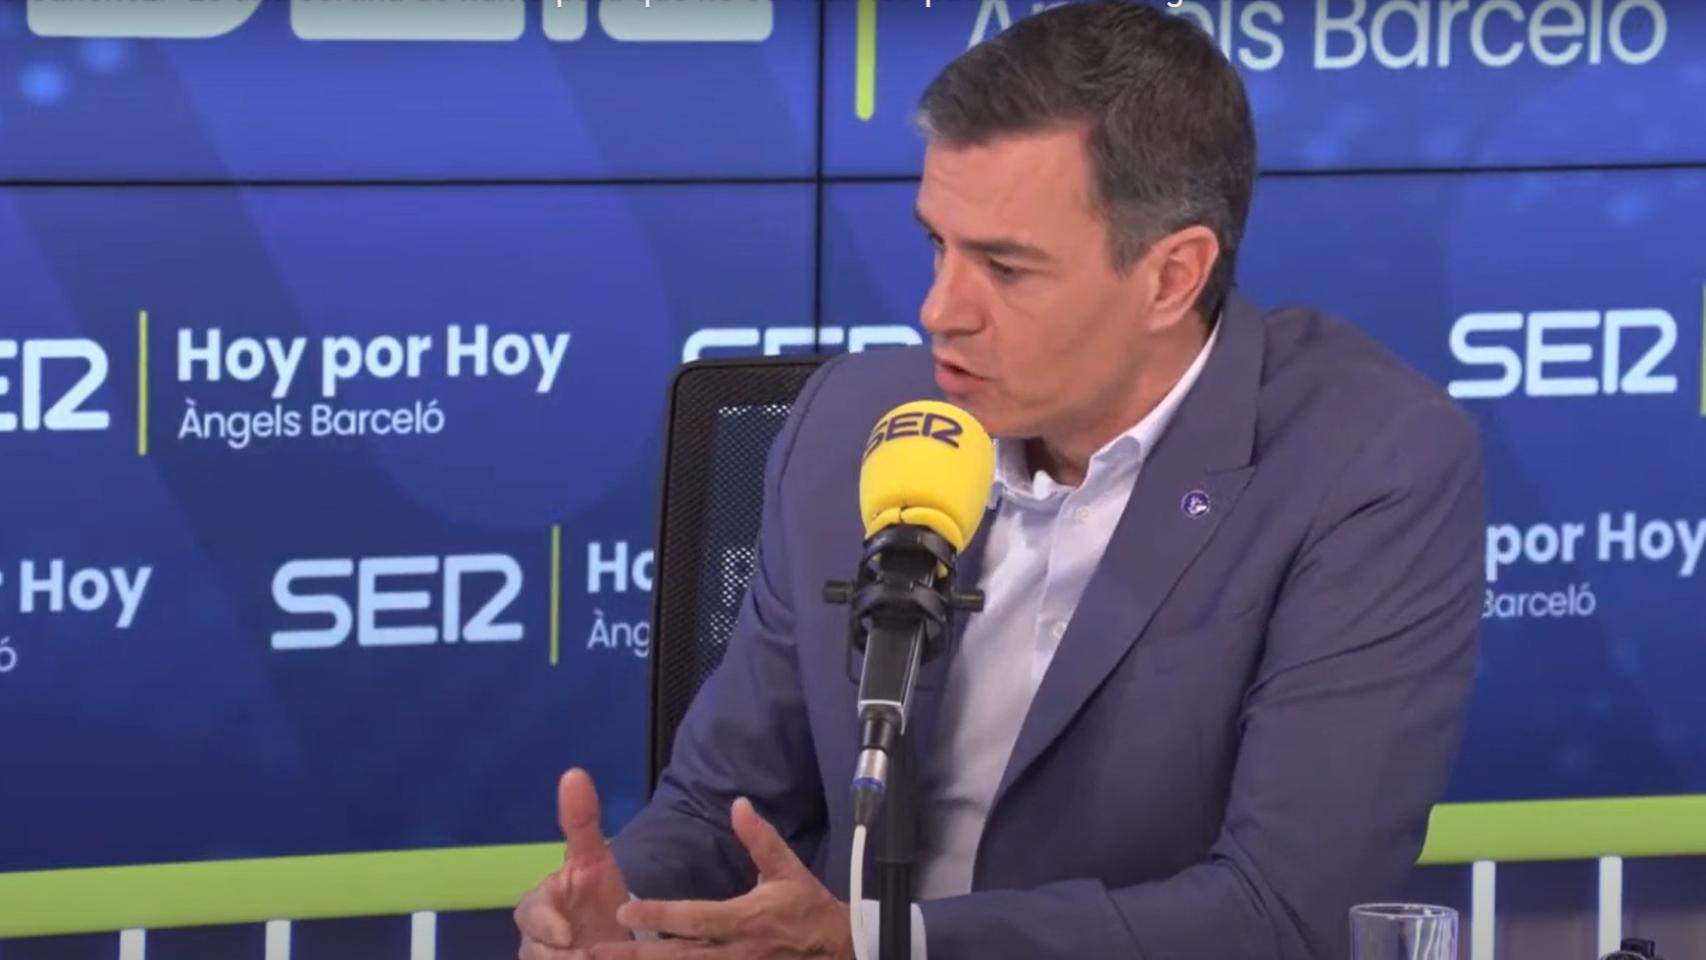 El presidente del Gobierno, Pedro Sánchez, este jueves durante su entrevista en la Cadena SER.